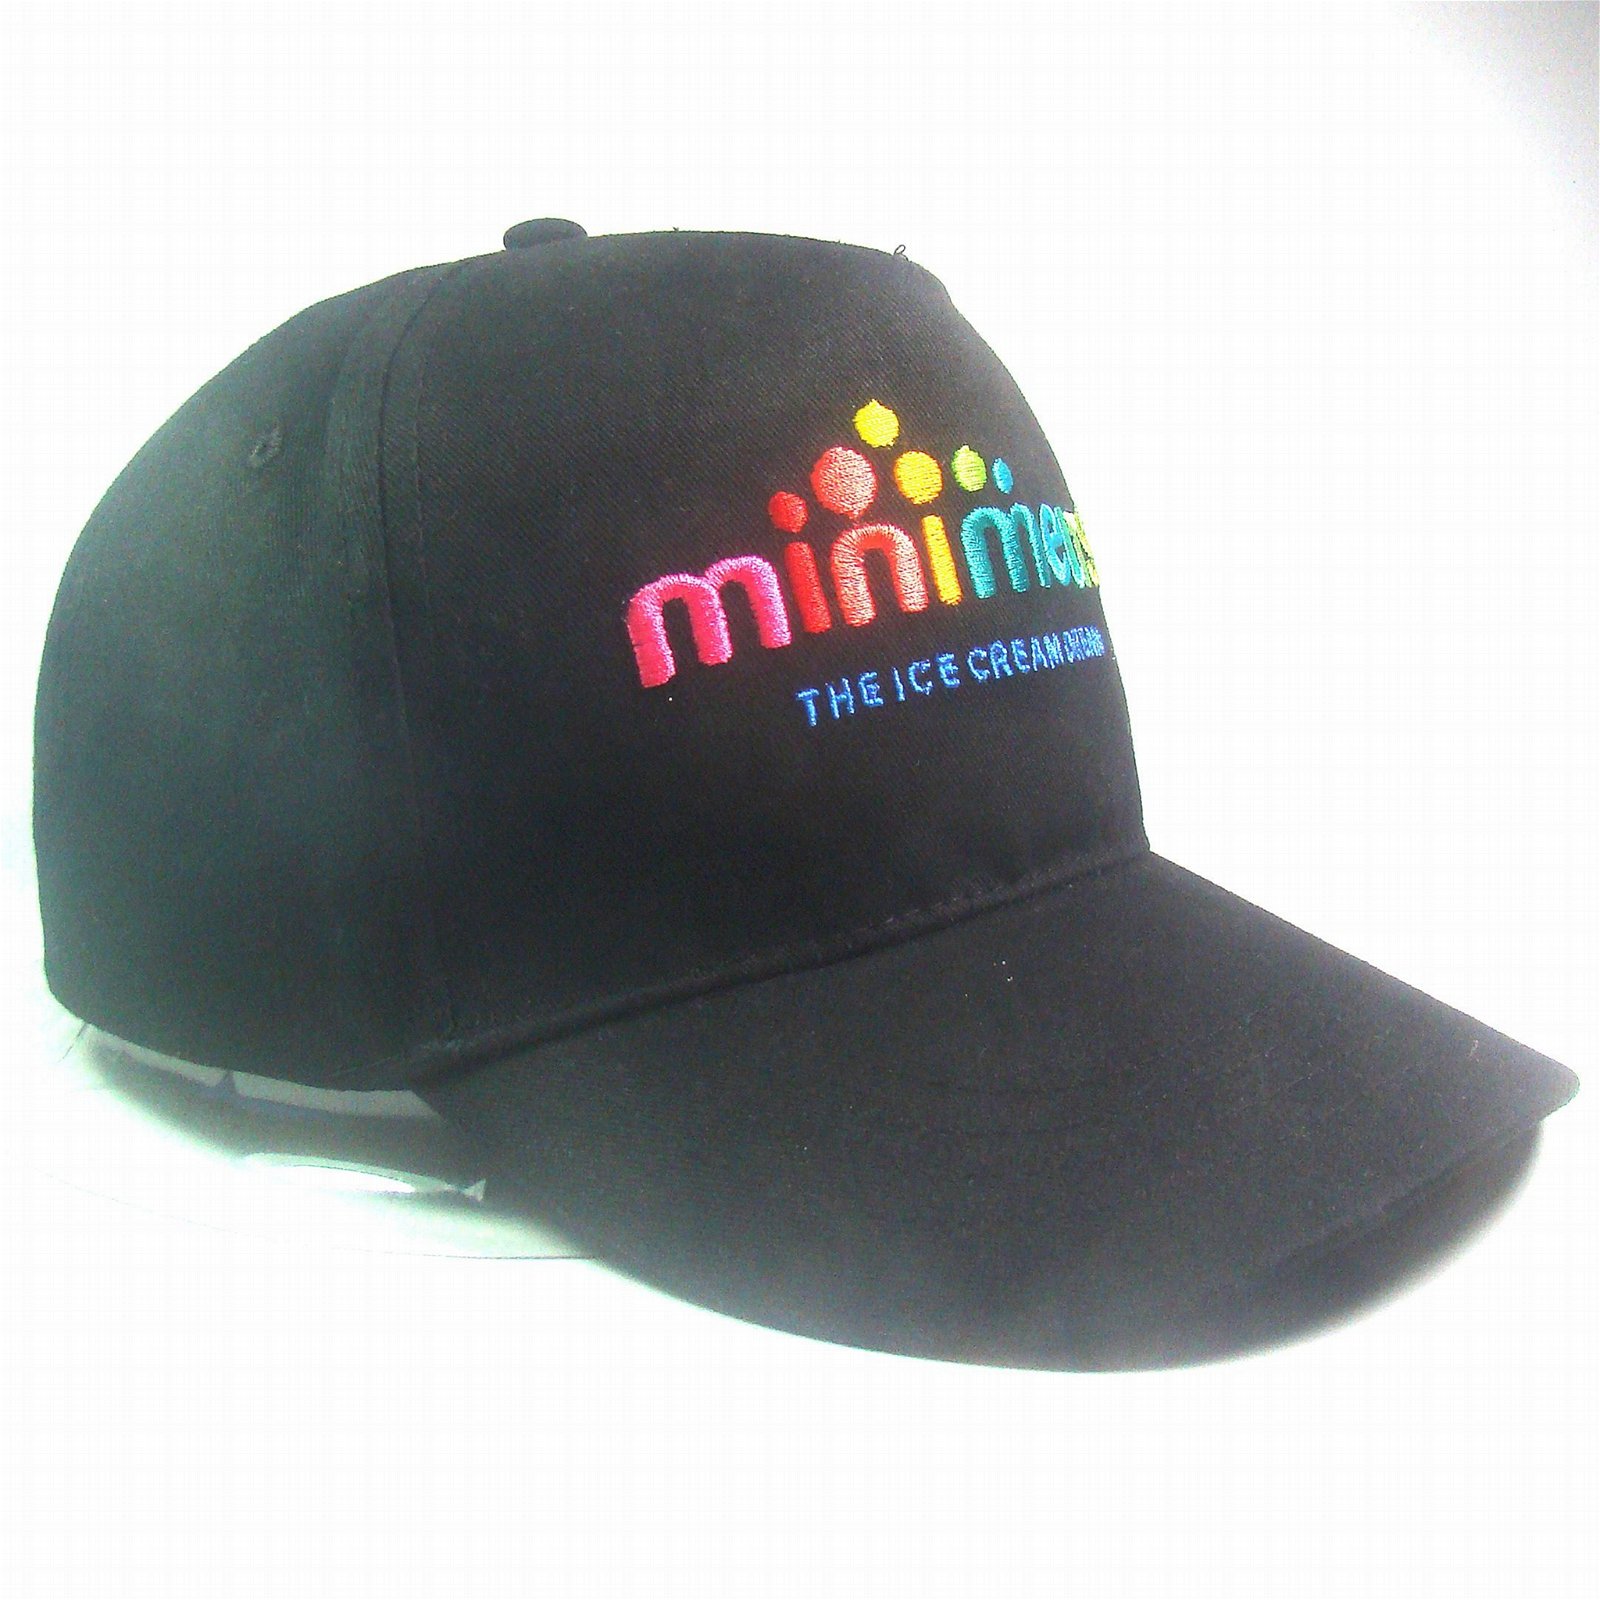 Minimelts cap 2